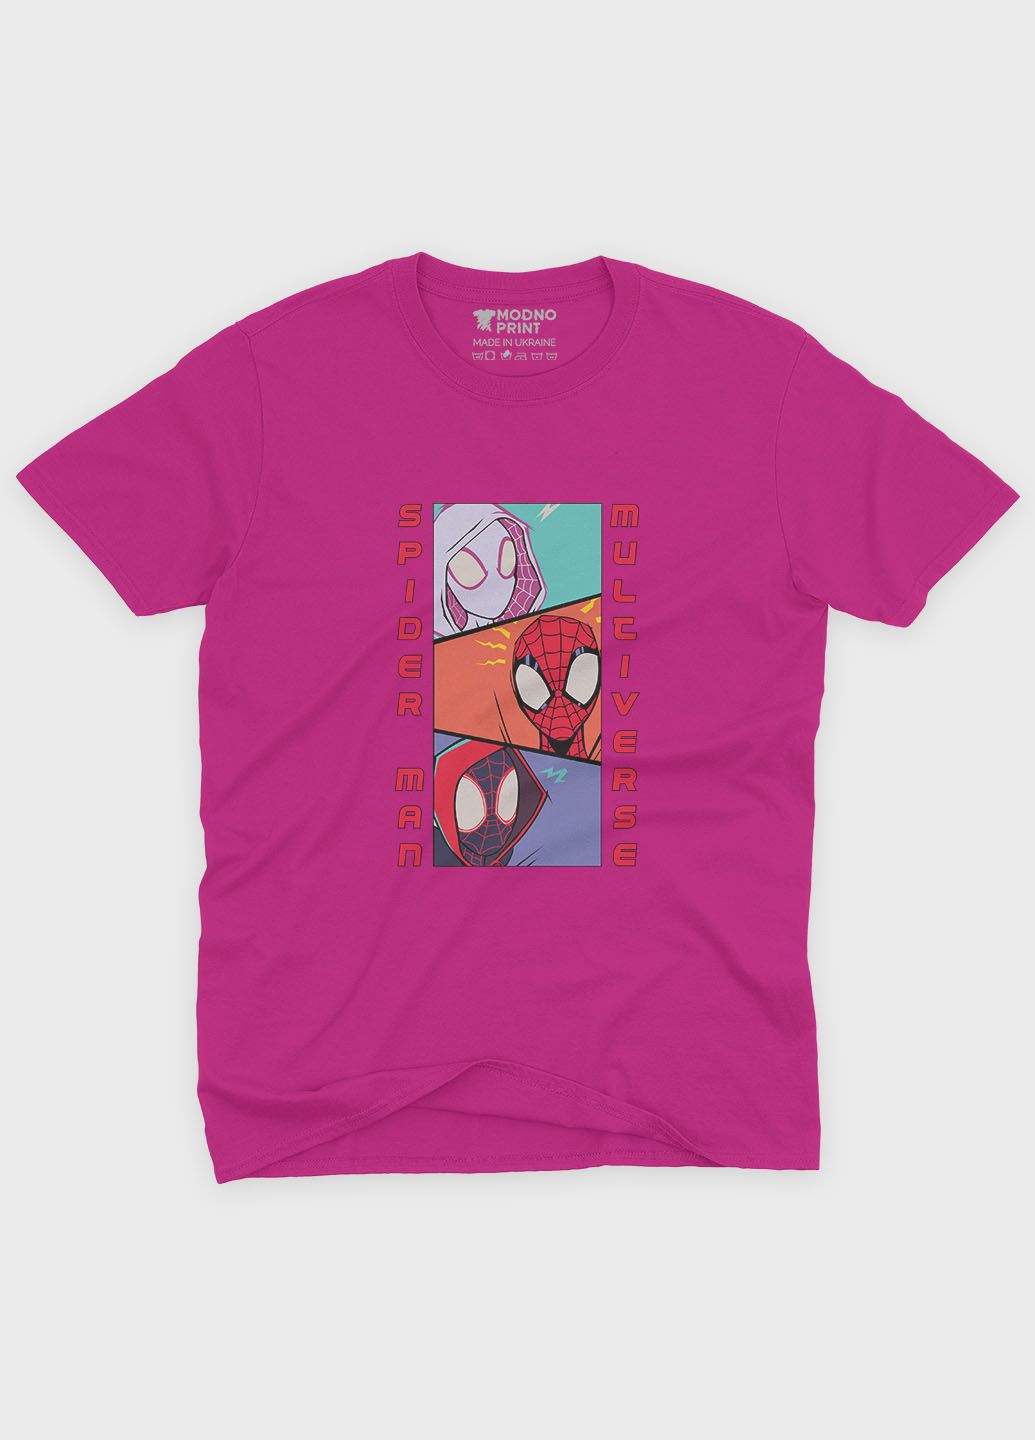 Рожева демісезонна футболка для дівчинки з принтом супергероя - людина-павук (ts001-1-fuxj-006-014-047-g) Modno